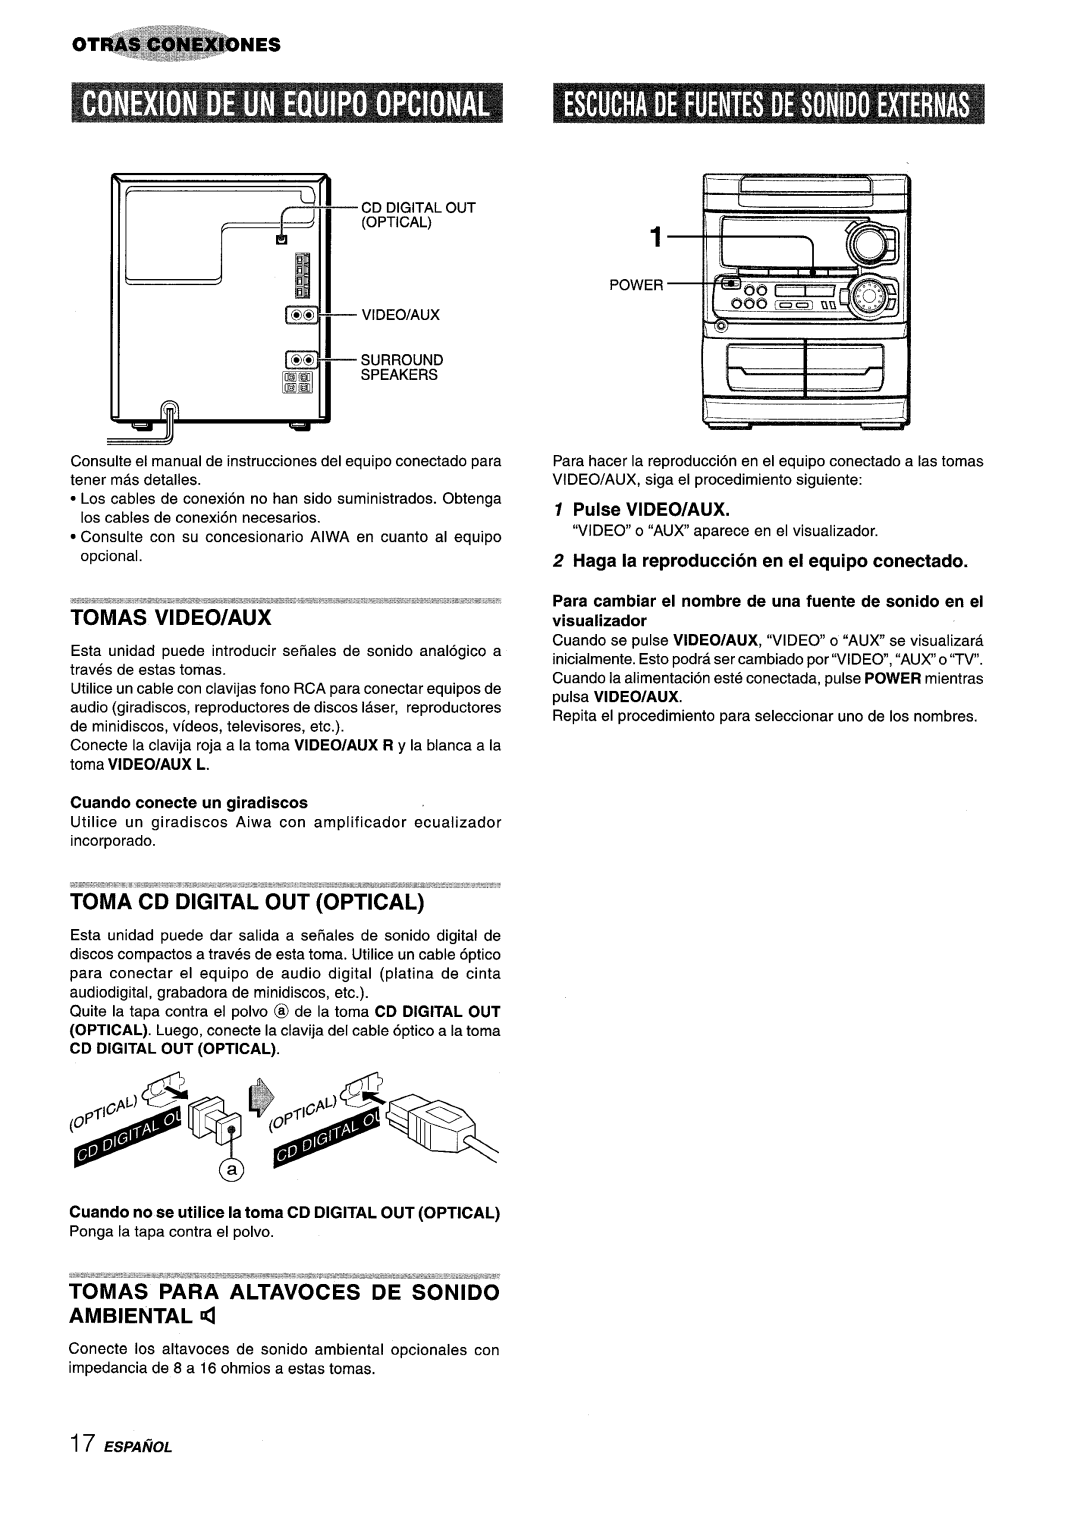 Aiwa CX-NA303, NSX-A303 manual Pulse VIDEO/AUX, Haga la reproduction en el equipo conectado, Cuando conecte un giradiscos 